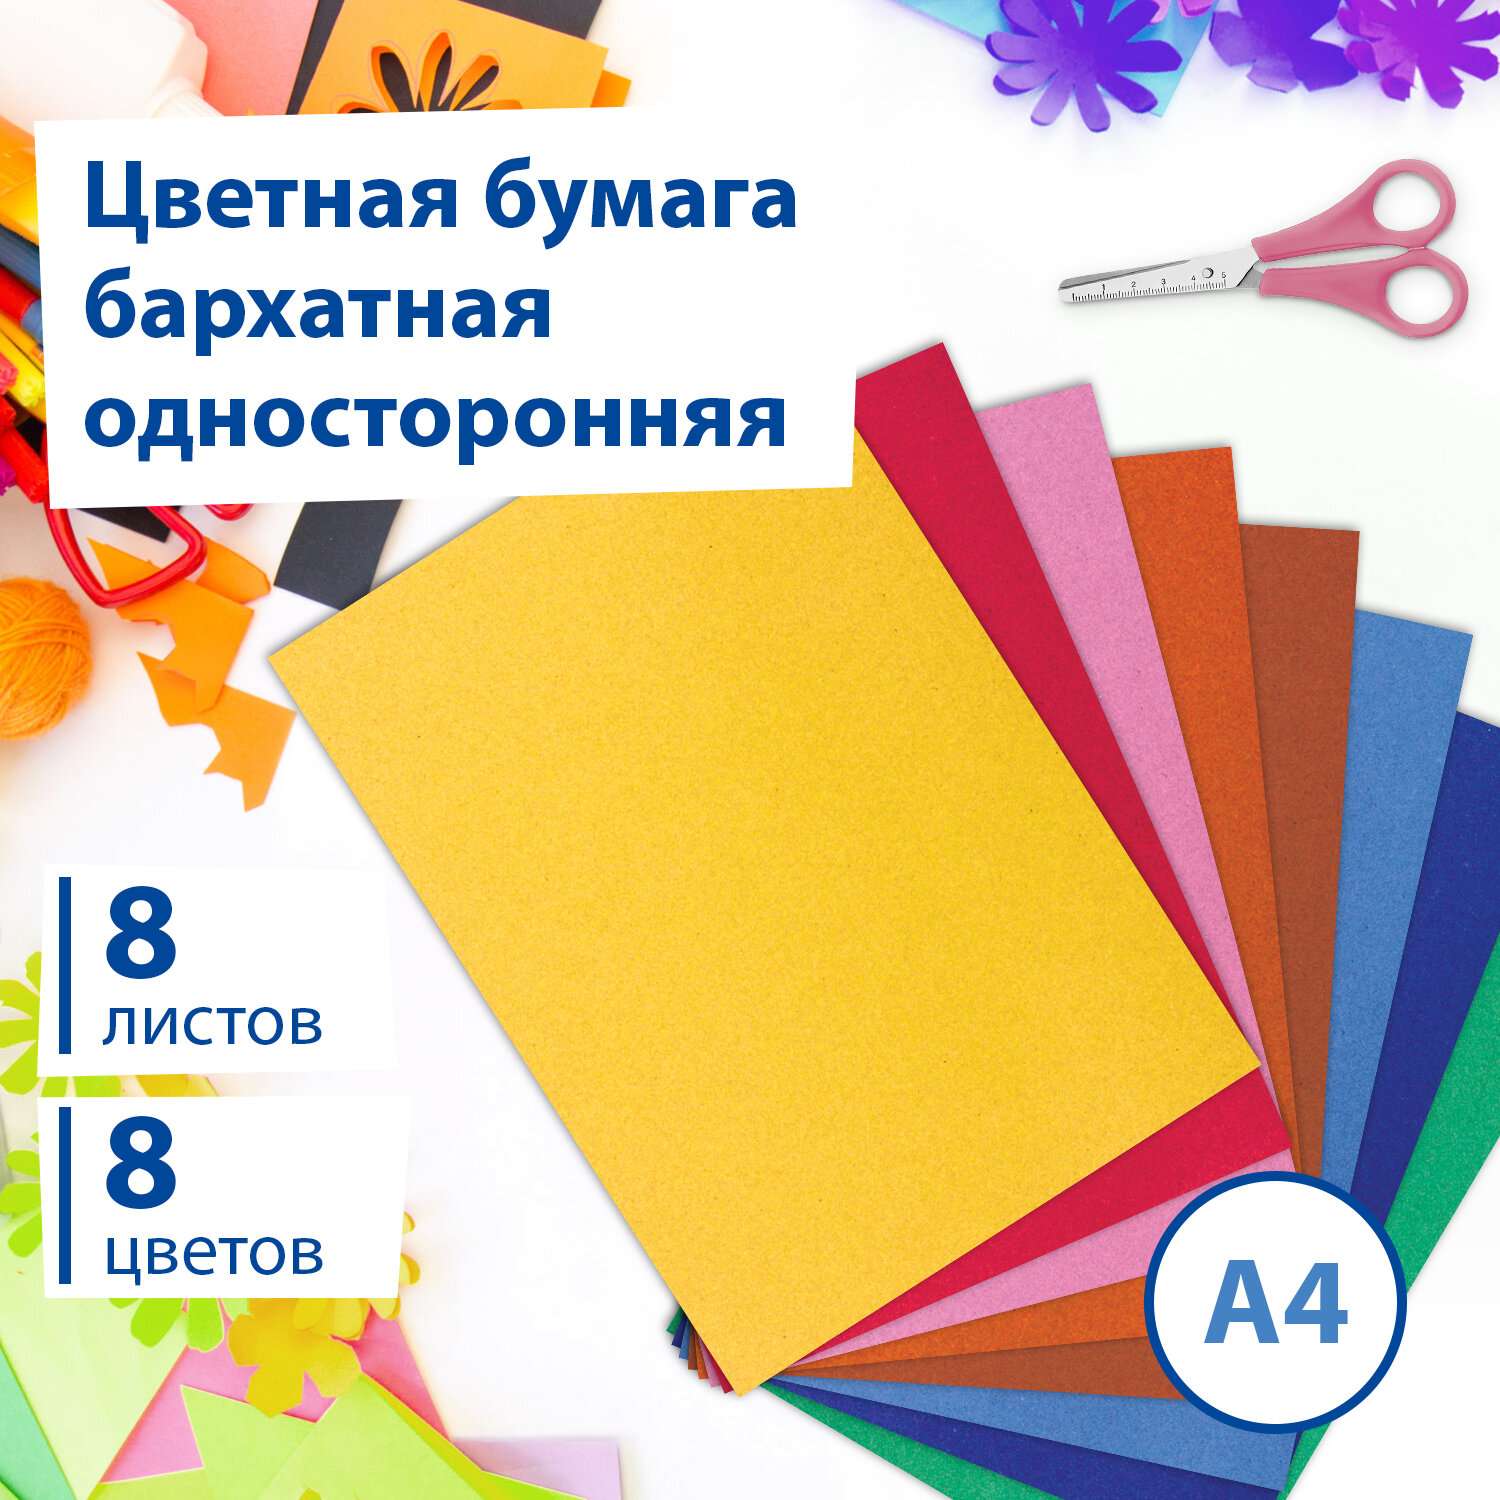 Цветная бумага Brauberg бархатная для творчества и оформления А4 8 листов 8 цветов - фото 1